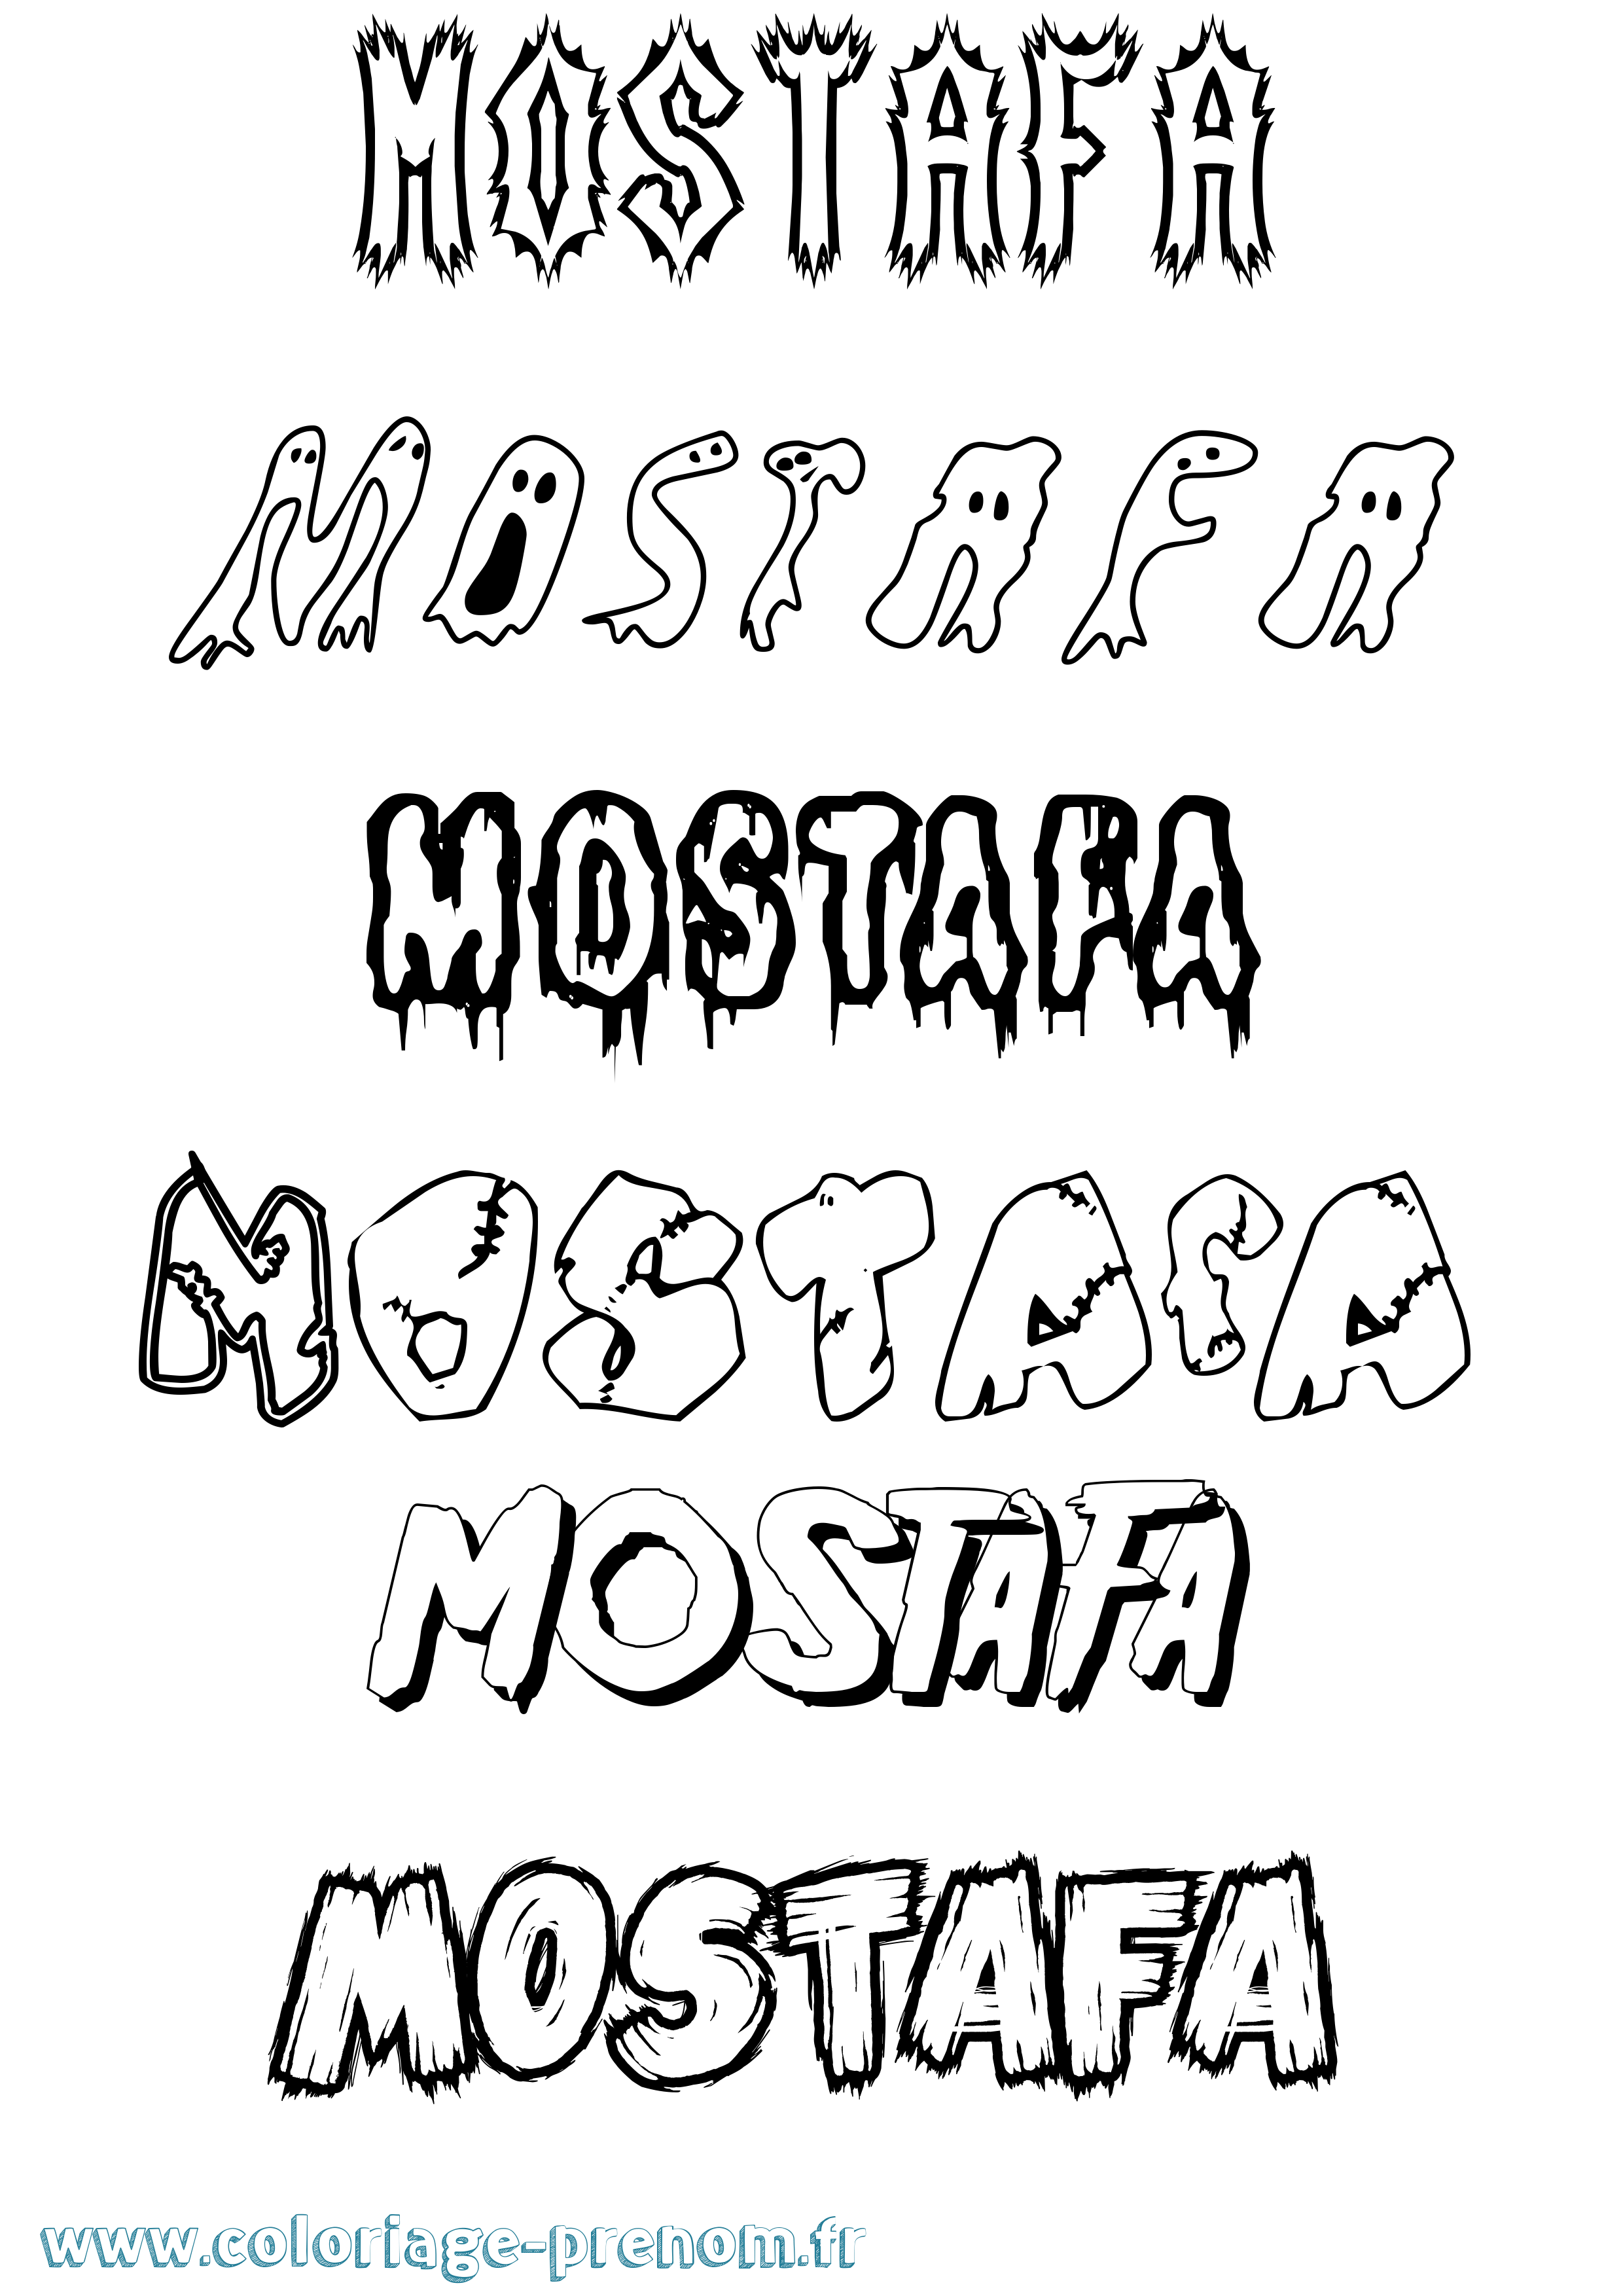 Coloriage prénom Mostafa Frisson